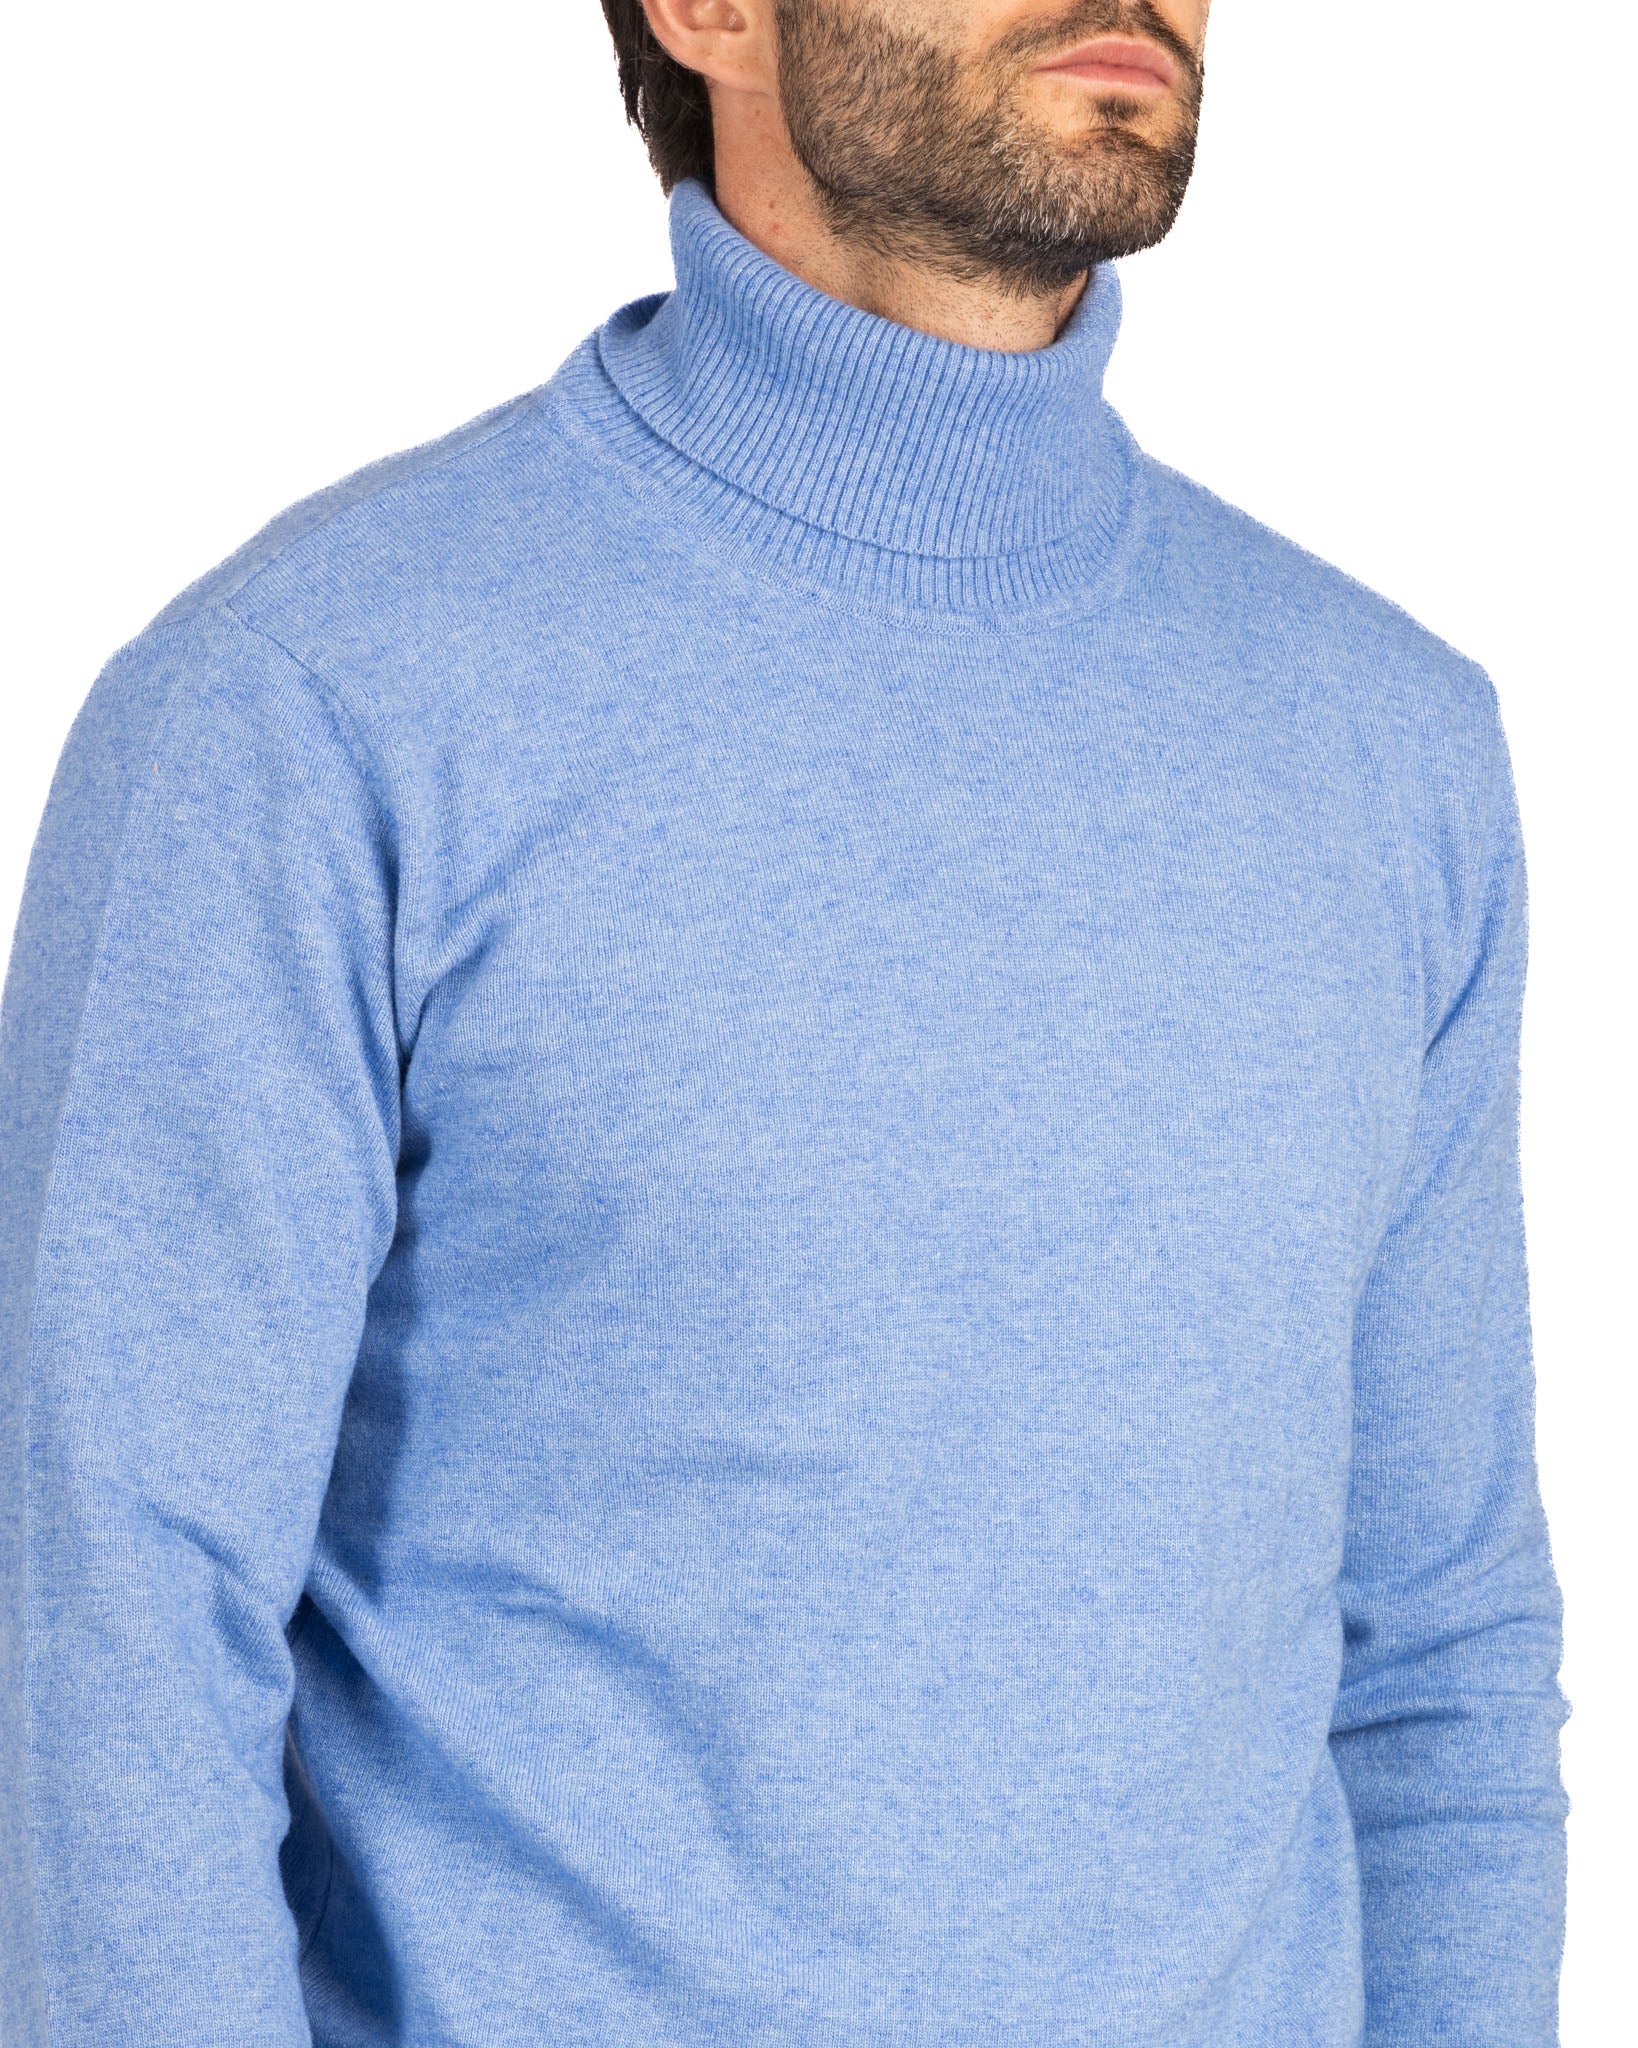 Lee - light blue cashmere blend turtleneck